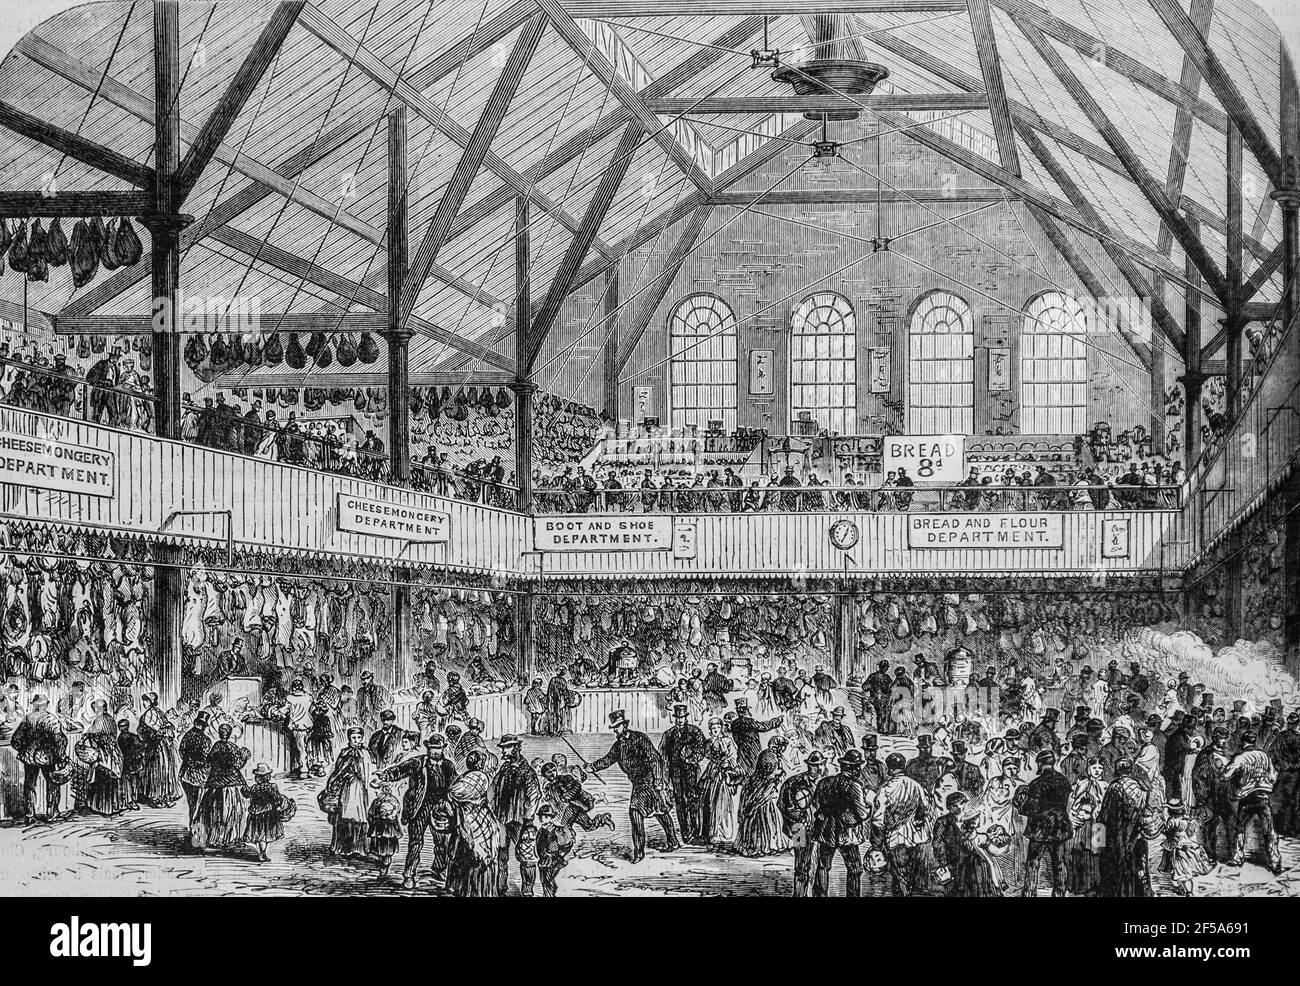 le marche au peuple a londres ,l'univers illustre,editeur michel levy 1868 Stock Photo